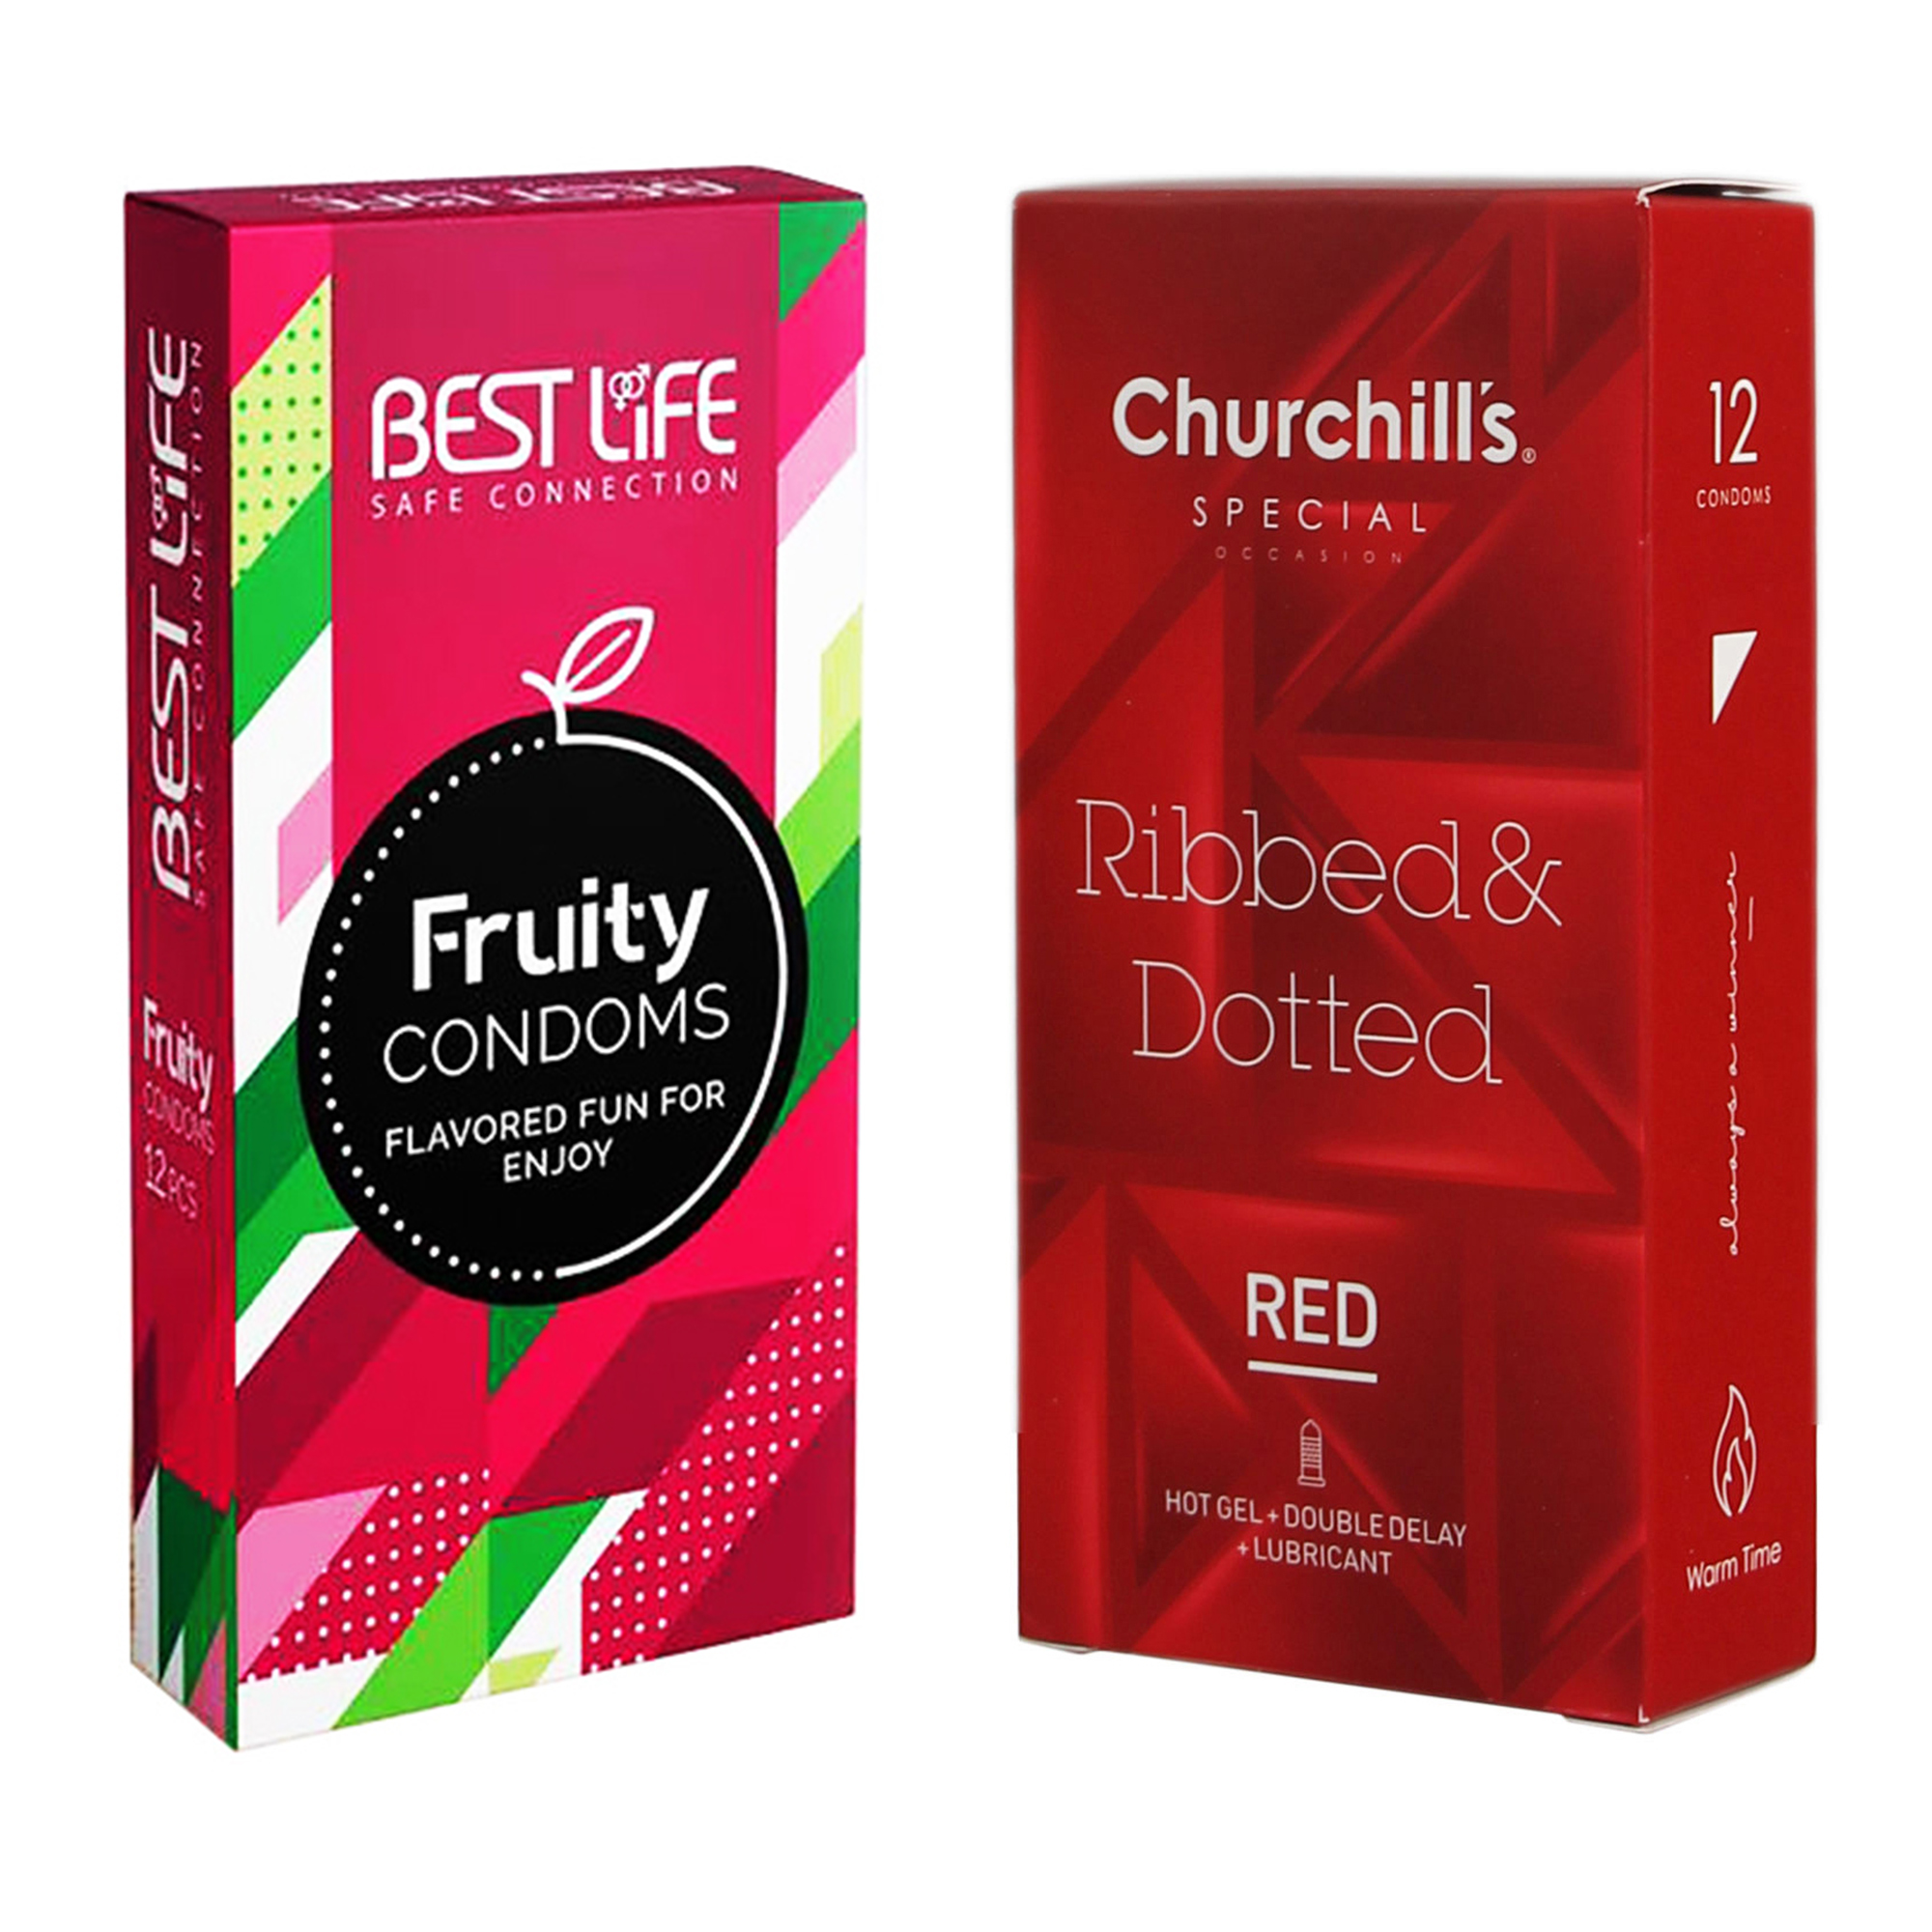 کاندوم چرچیلز مدل Ribbed & Dotted Red بسته 12 عددی به همراه کاندوم بست لایف مدل Fruity بسته 12 عددی